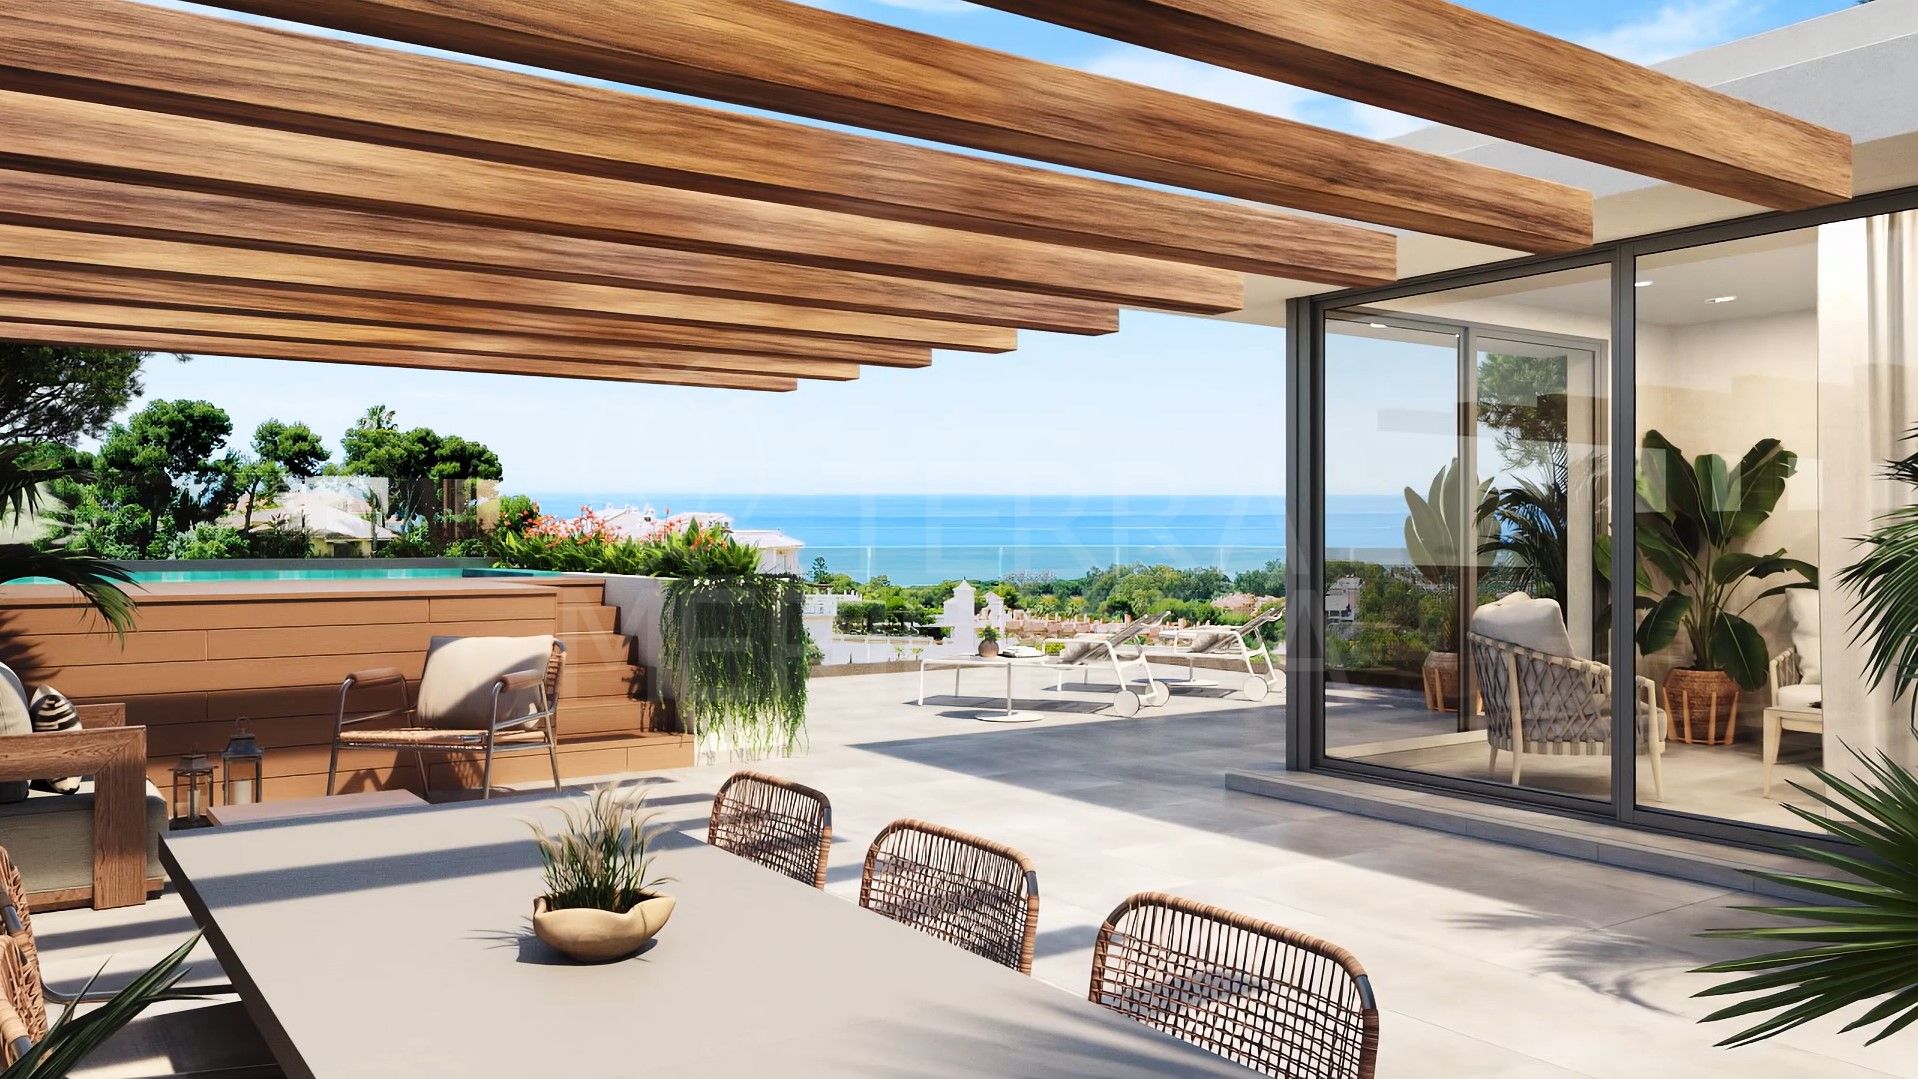 Ático a estrenar, 3 dormitorios, piscina privada, terraza y solárium, en venta en Venere Marbella